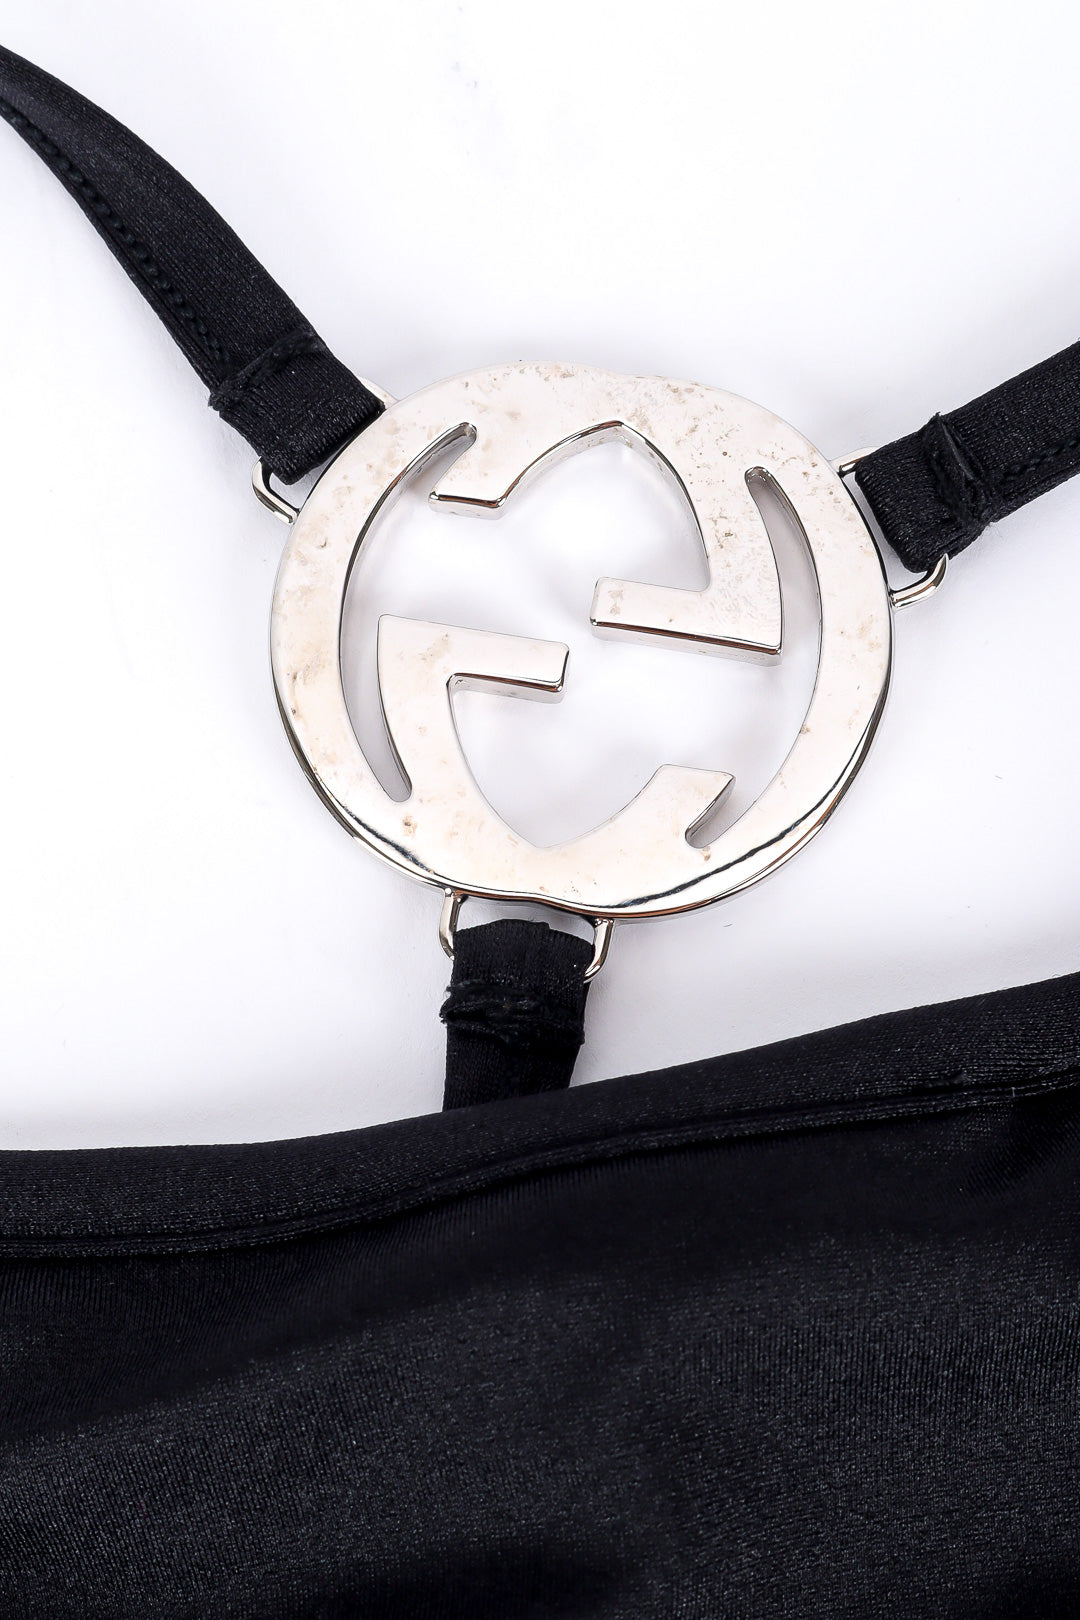 Black g-string by Tom Ford for Gucci back of emblem @recessla